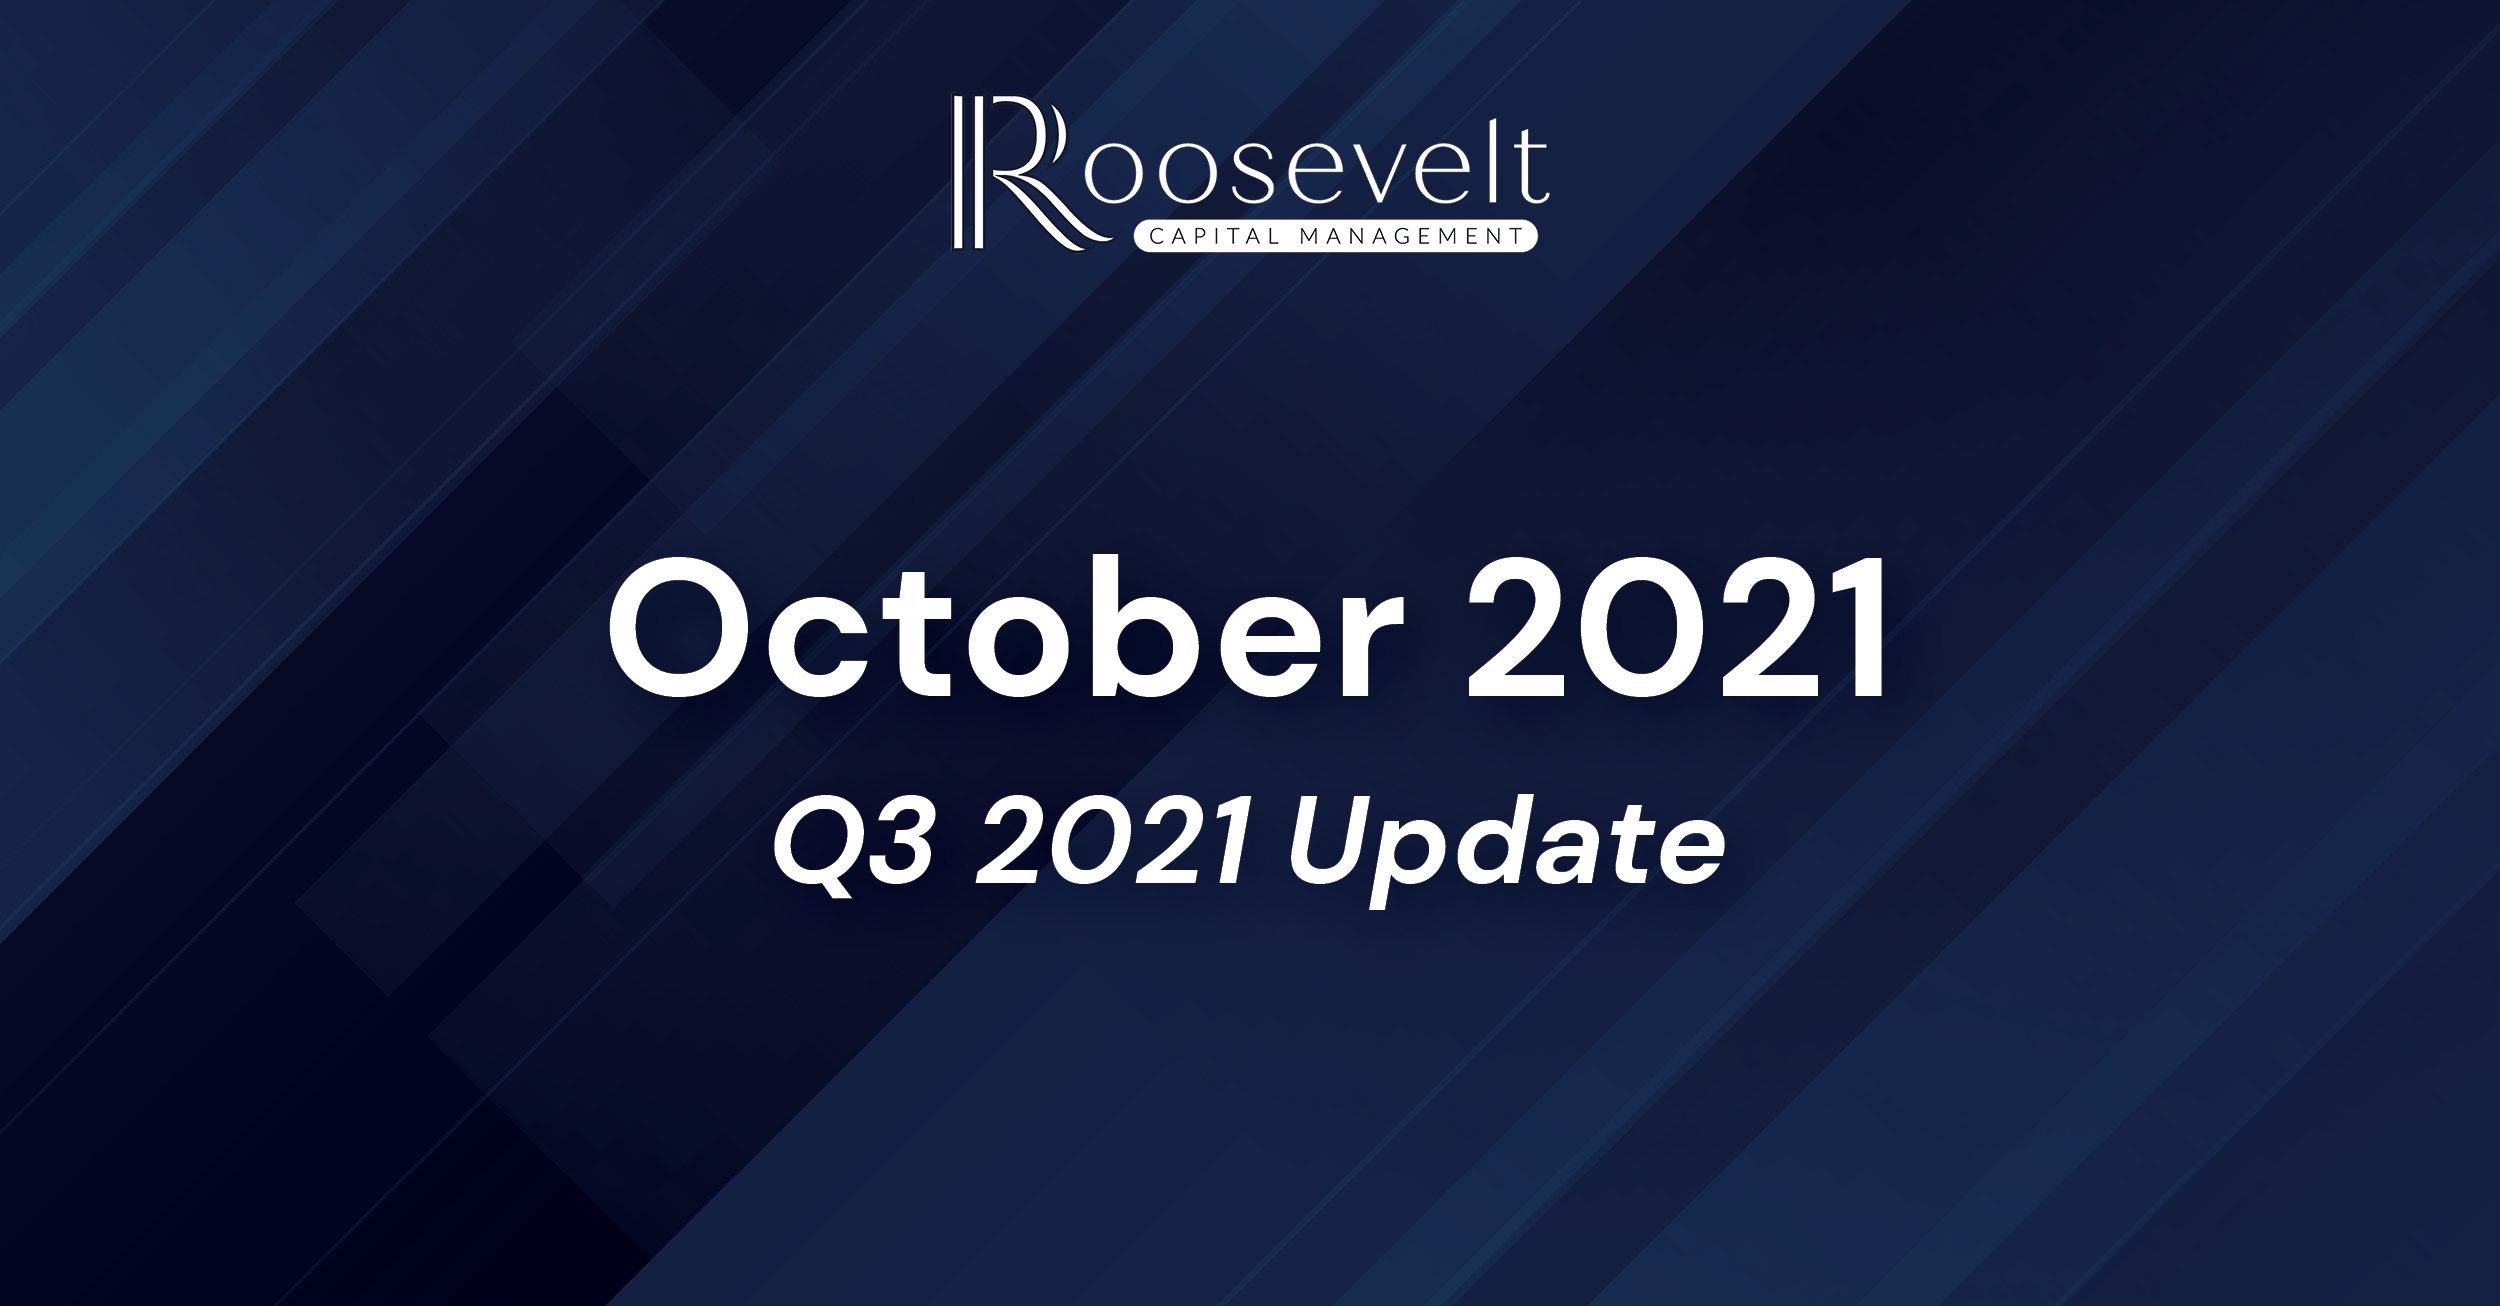 October 2021 - Q3 2021 Update